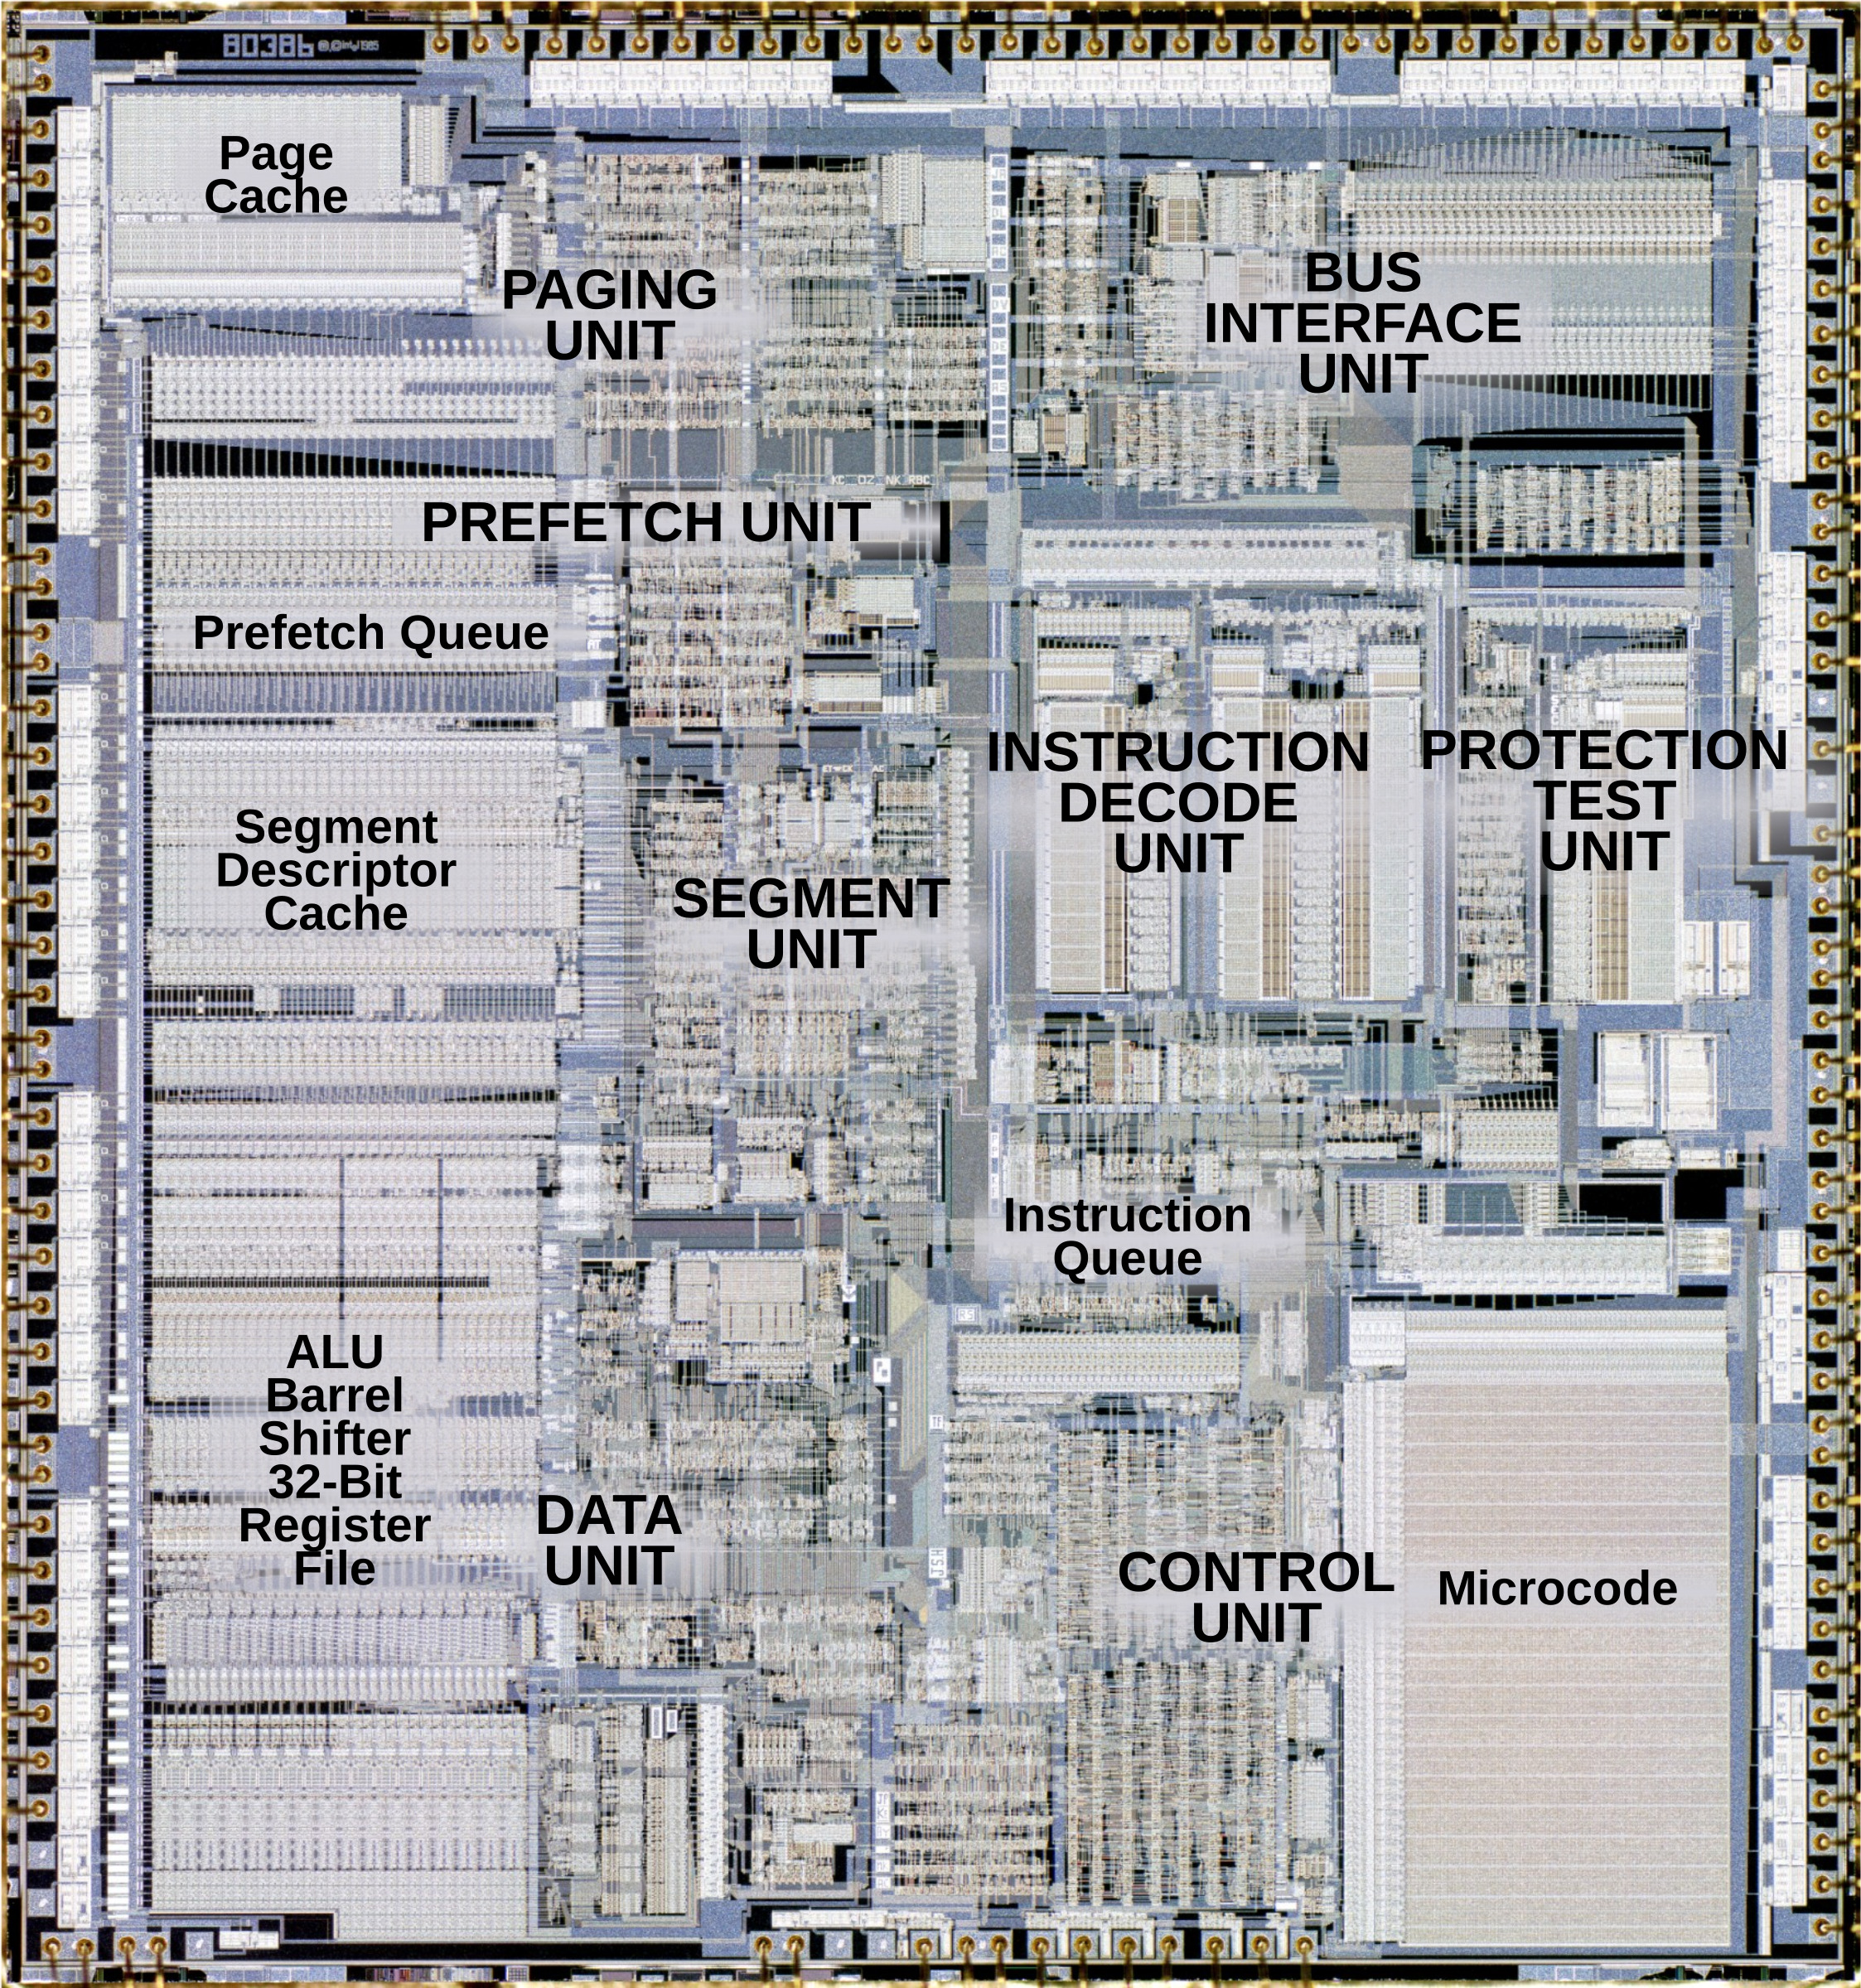 Рис.3.Фотография кристалла микропроцессора 80386 с обозначением функциональных областей. 1985г. Заимствованно из блога Кена Ширриффа, сайт http://www.righto.com/